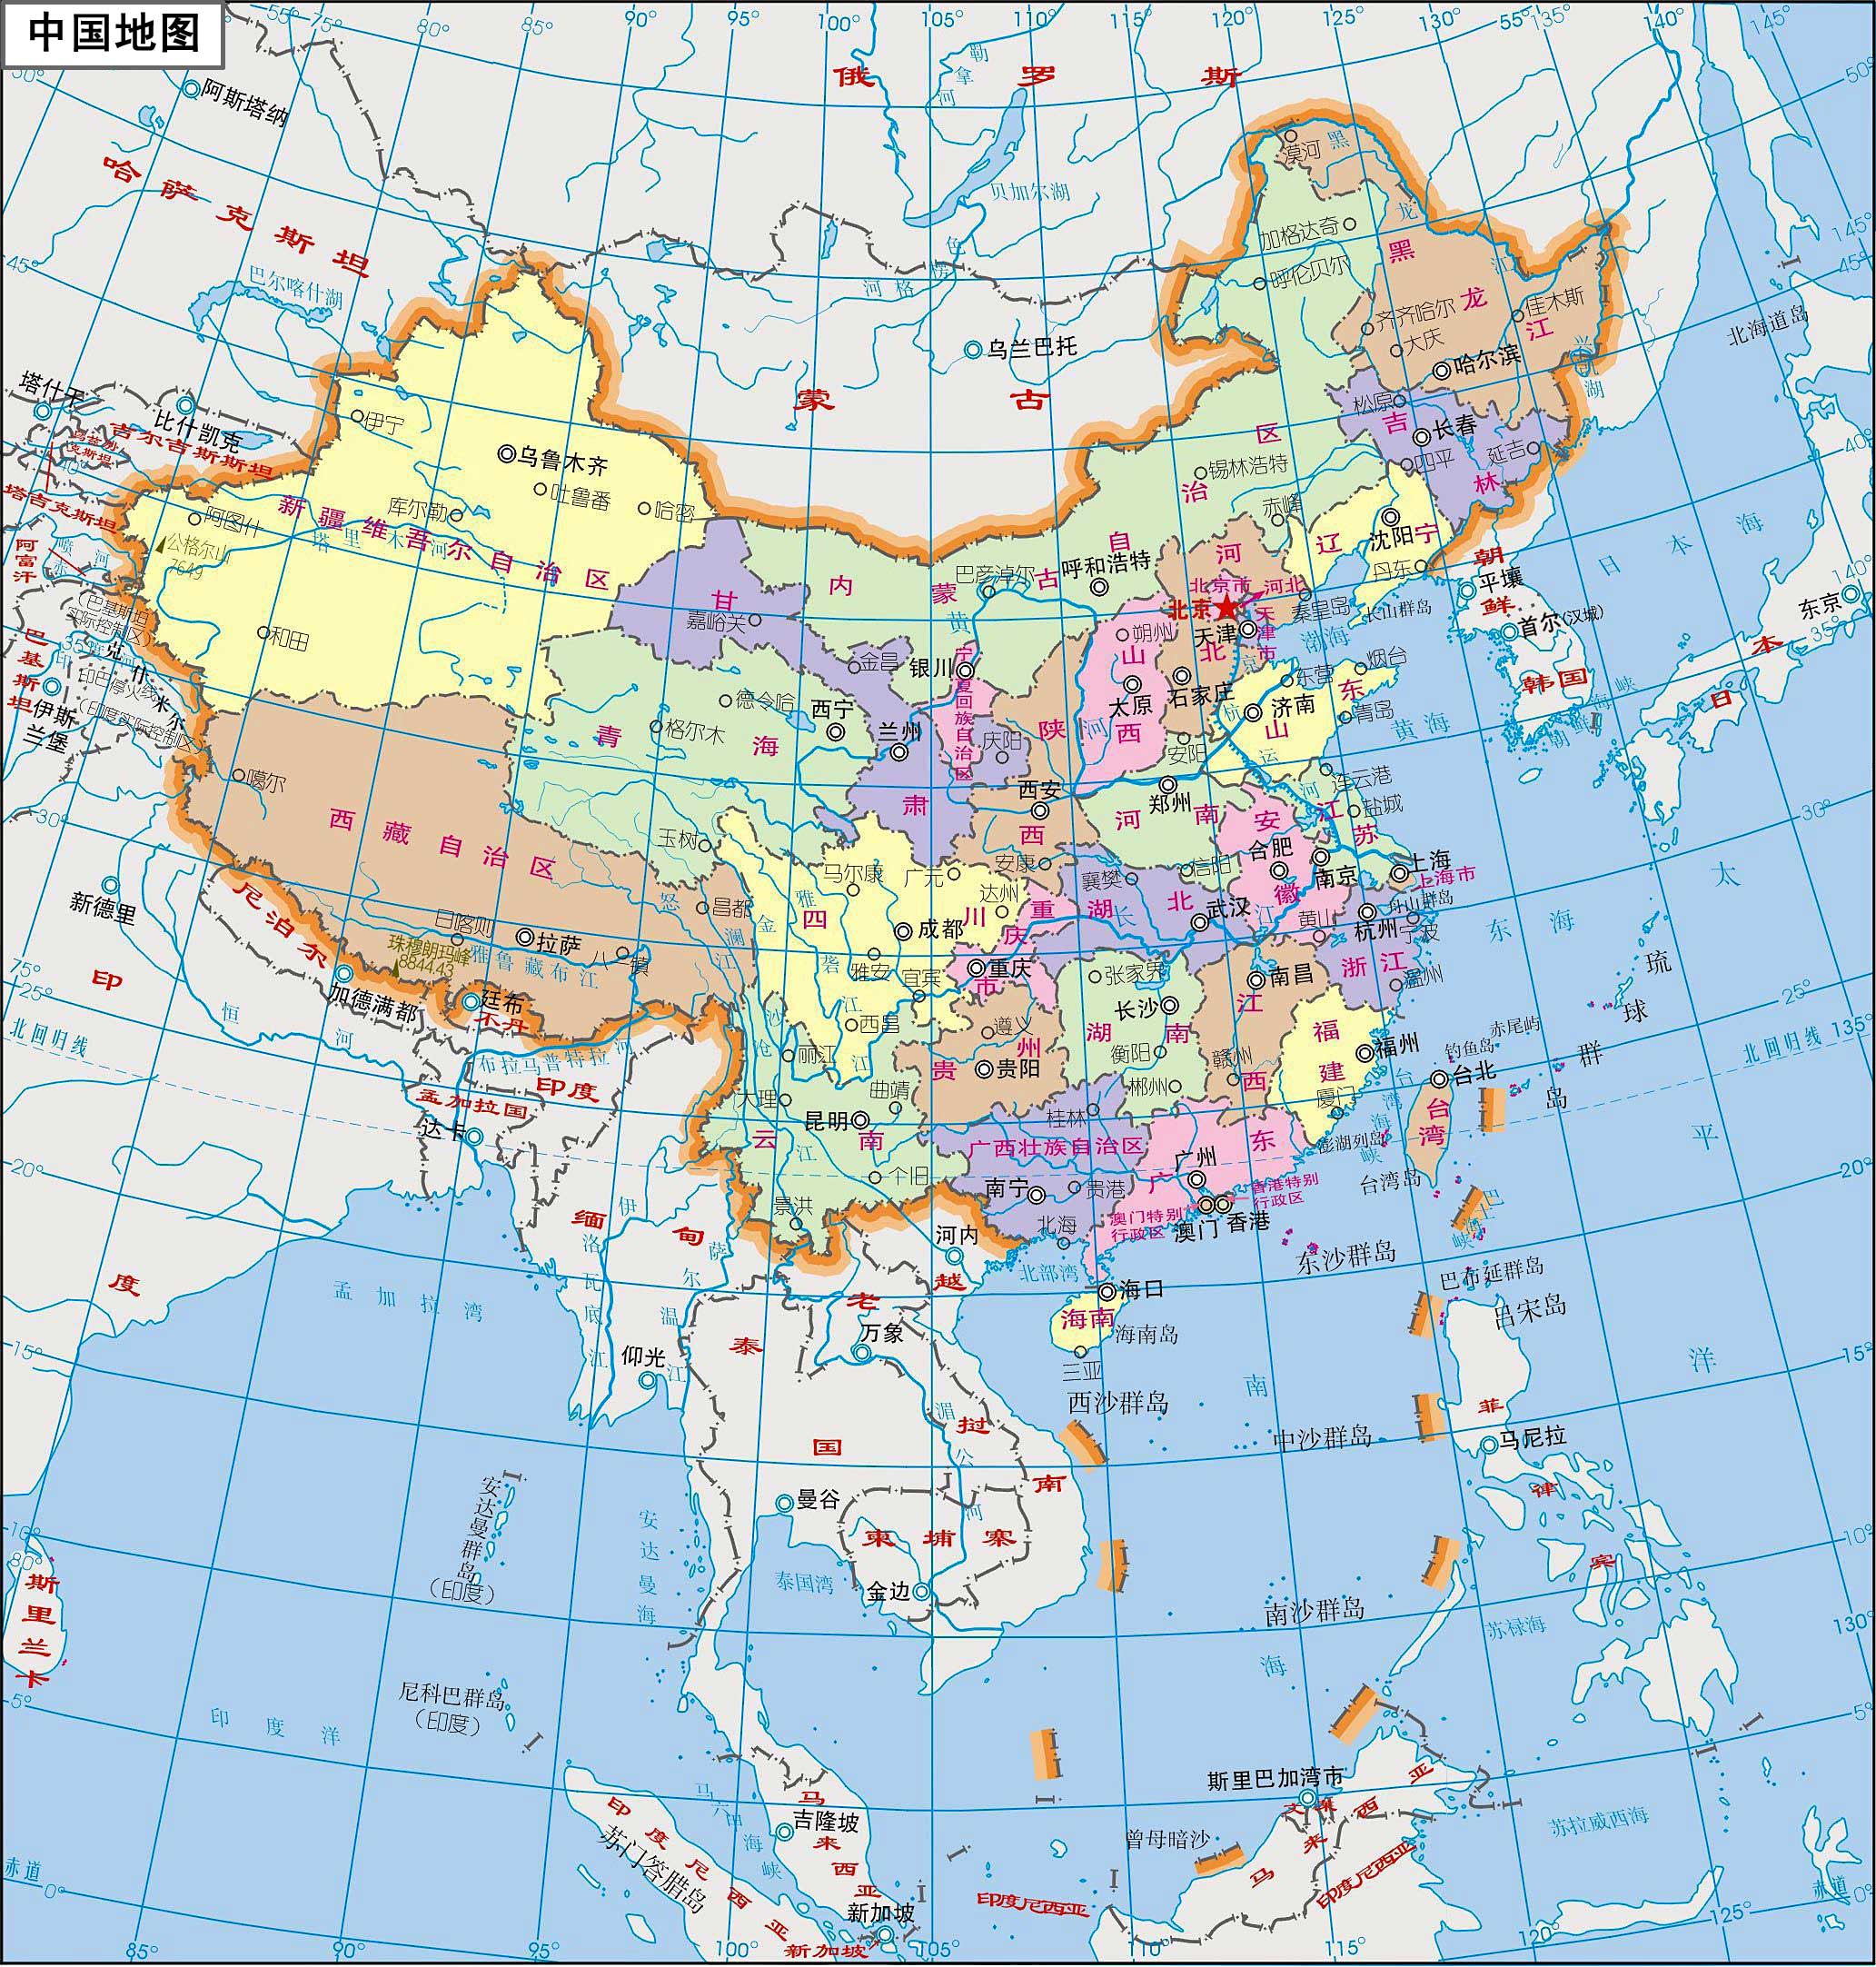 求2015年最新超高清中国地图，JPG或PSD格式均可，可追加_百度知道